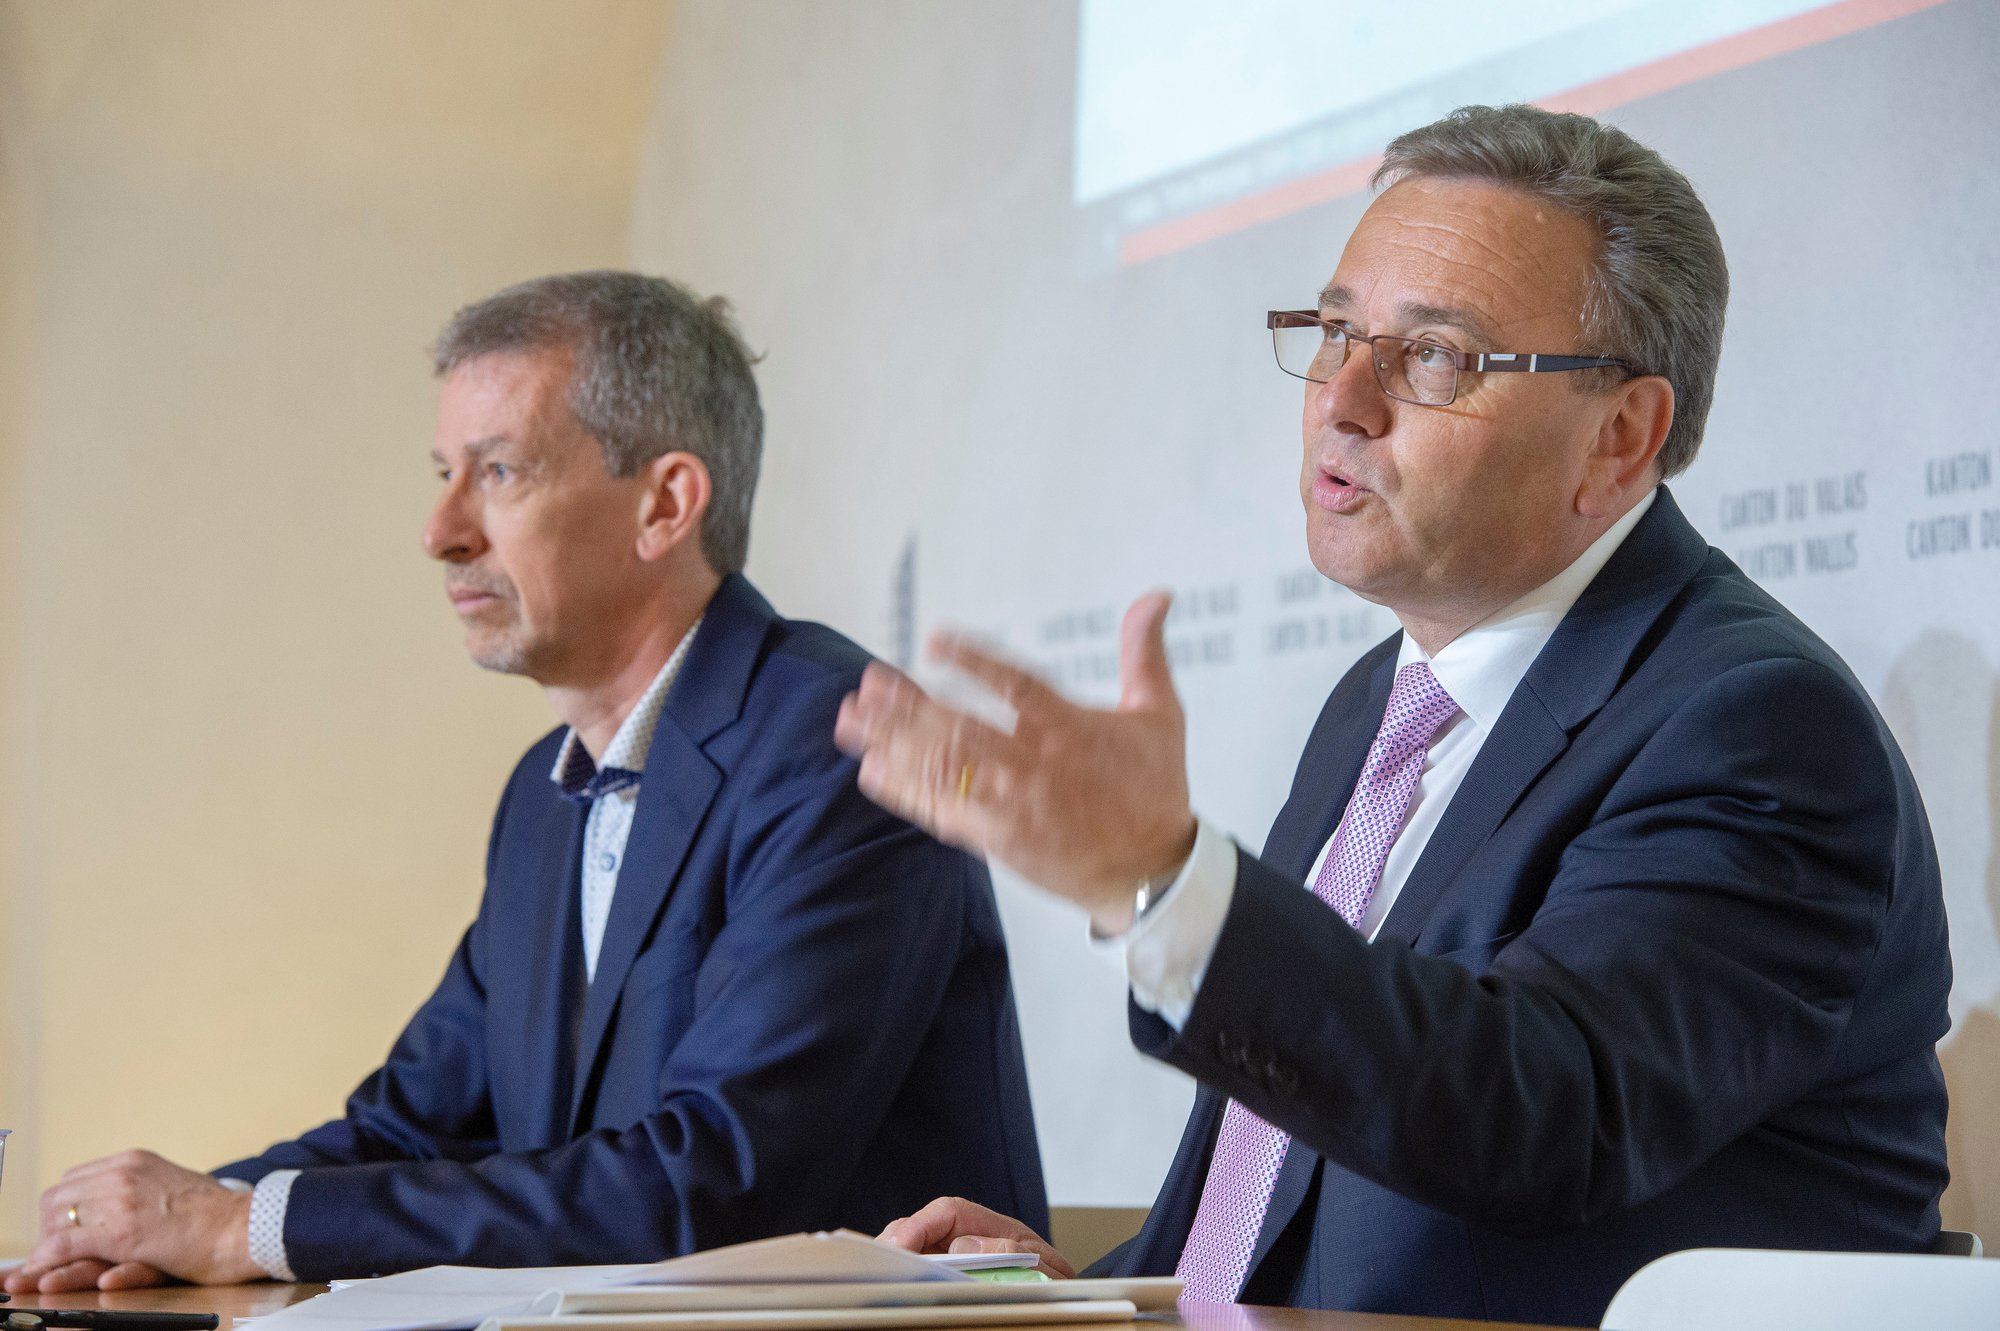 Roberto Schmidt, conseiller d'Etat chargé de l'énergie, a présenté lundi 29 avril 2019 la vision 2060 et les objectifs énergétiques 2035 en compagnie de son chef de service Joël Fournier (à gauche).